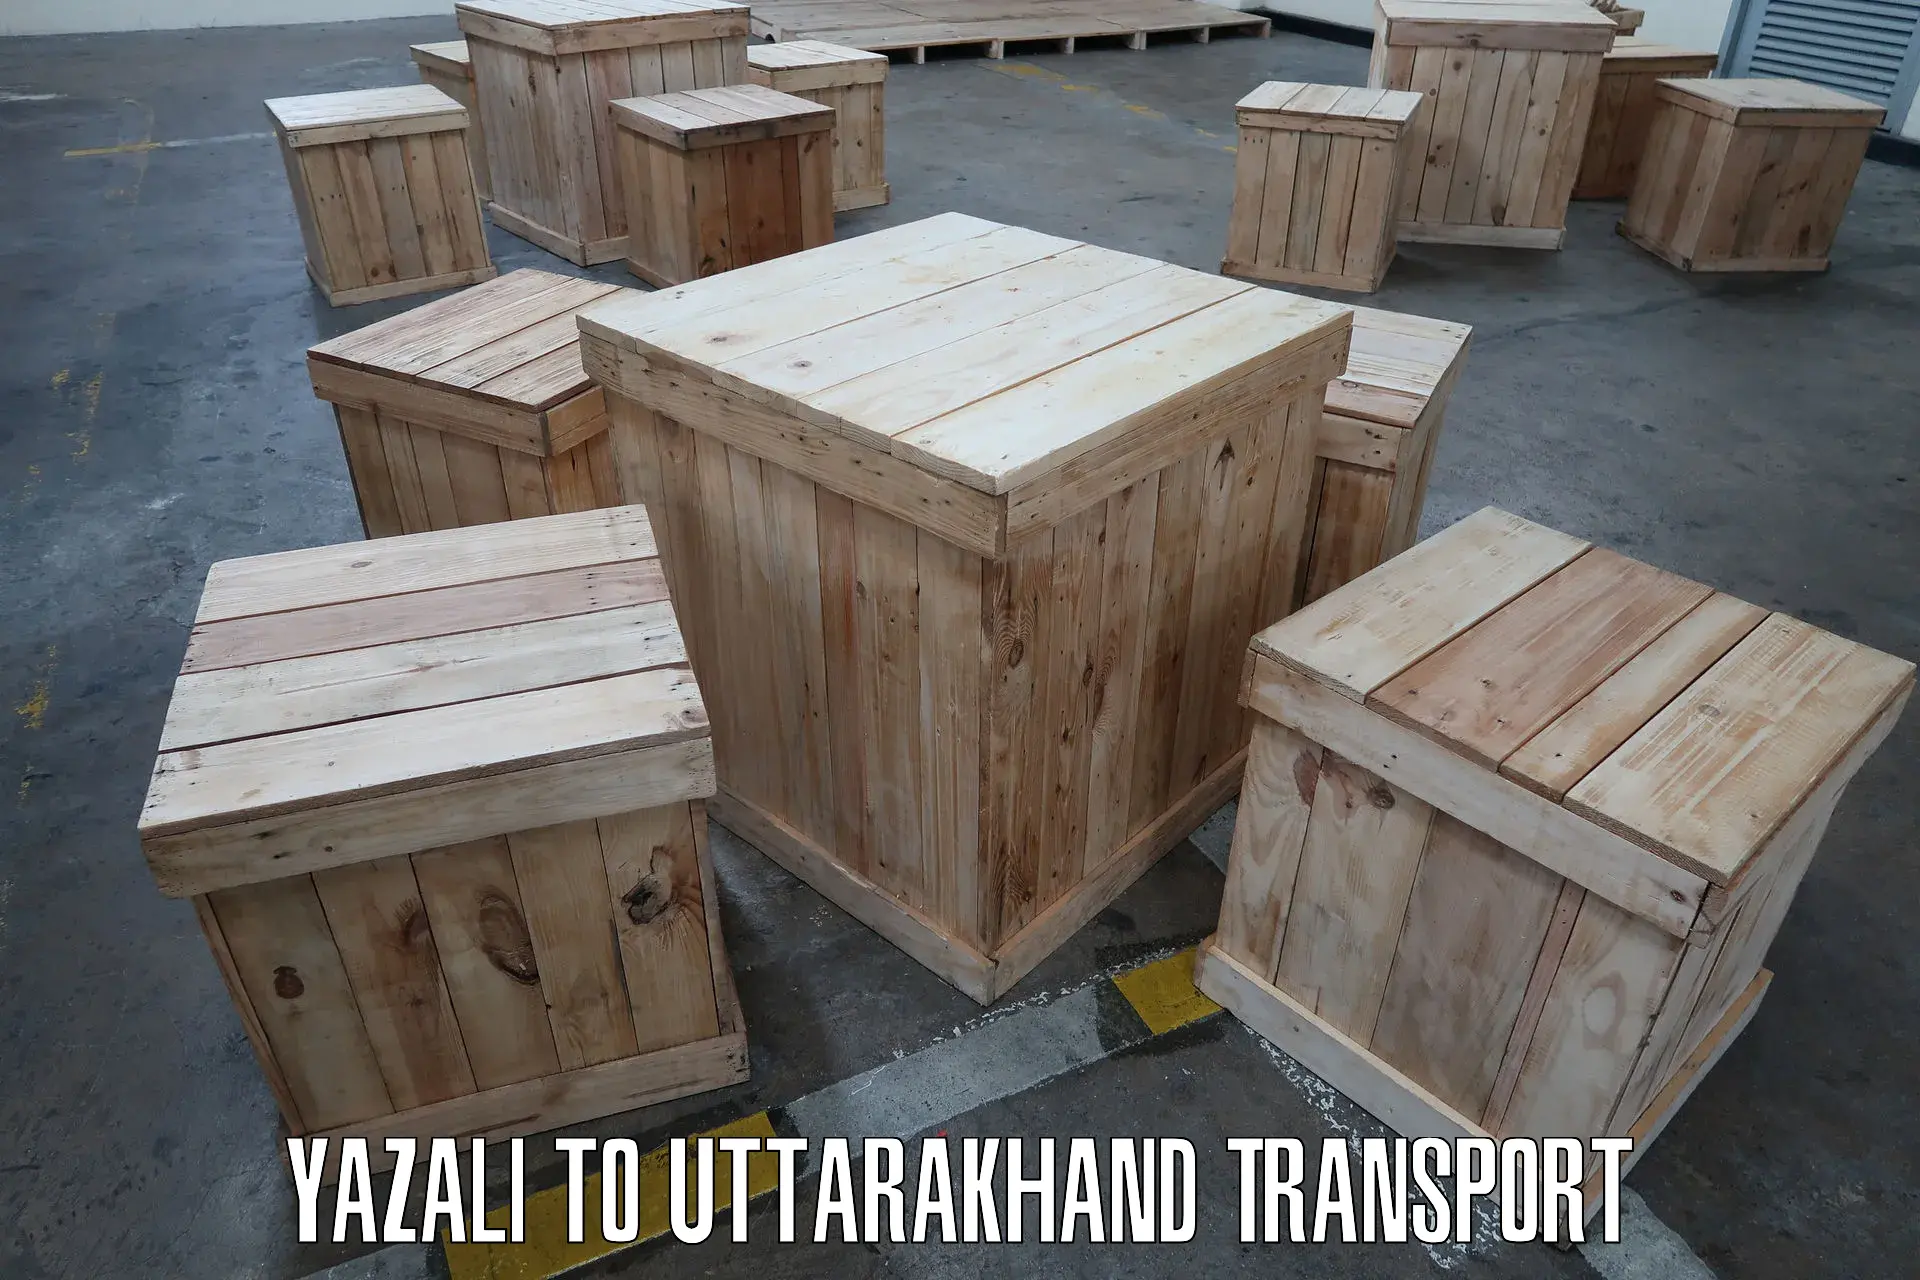 Shipping partner Yazali to Uttarakhand